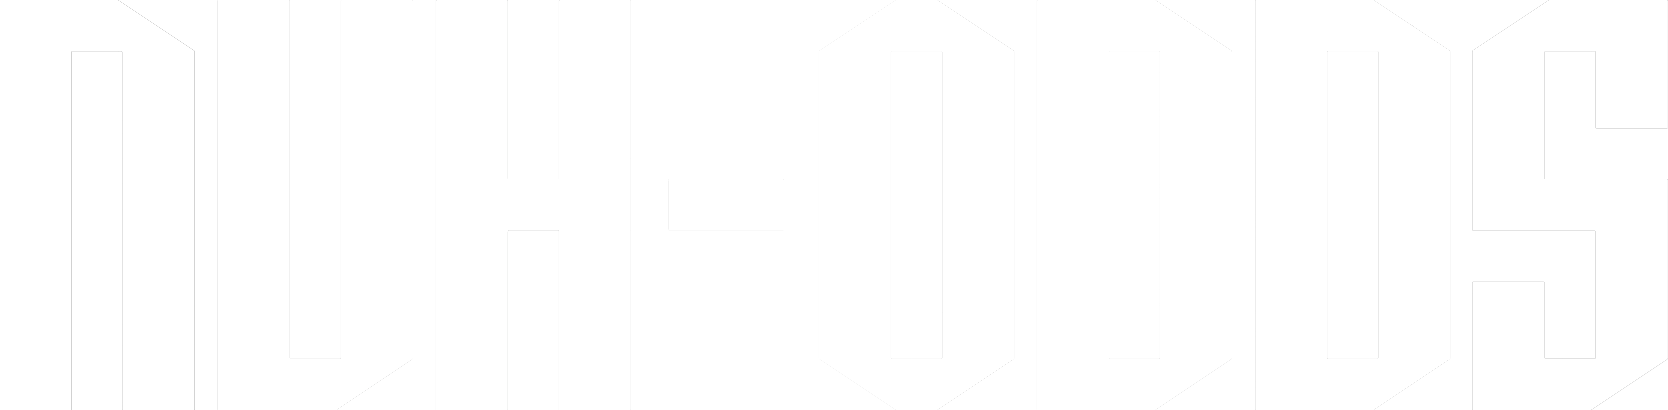 NUH-Odds logo